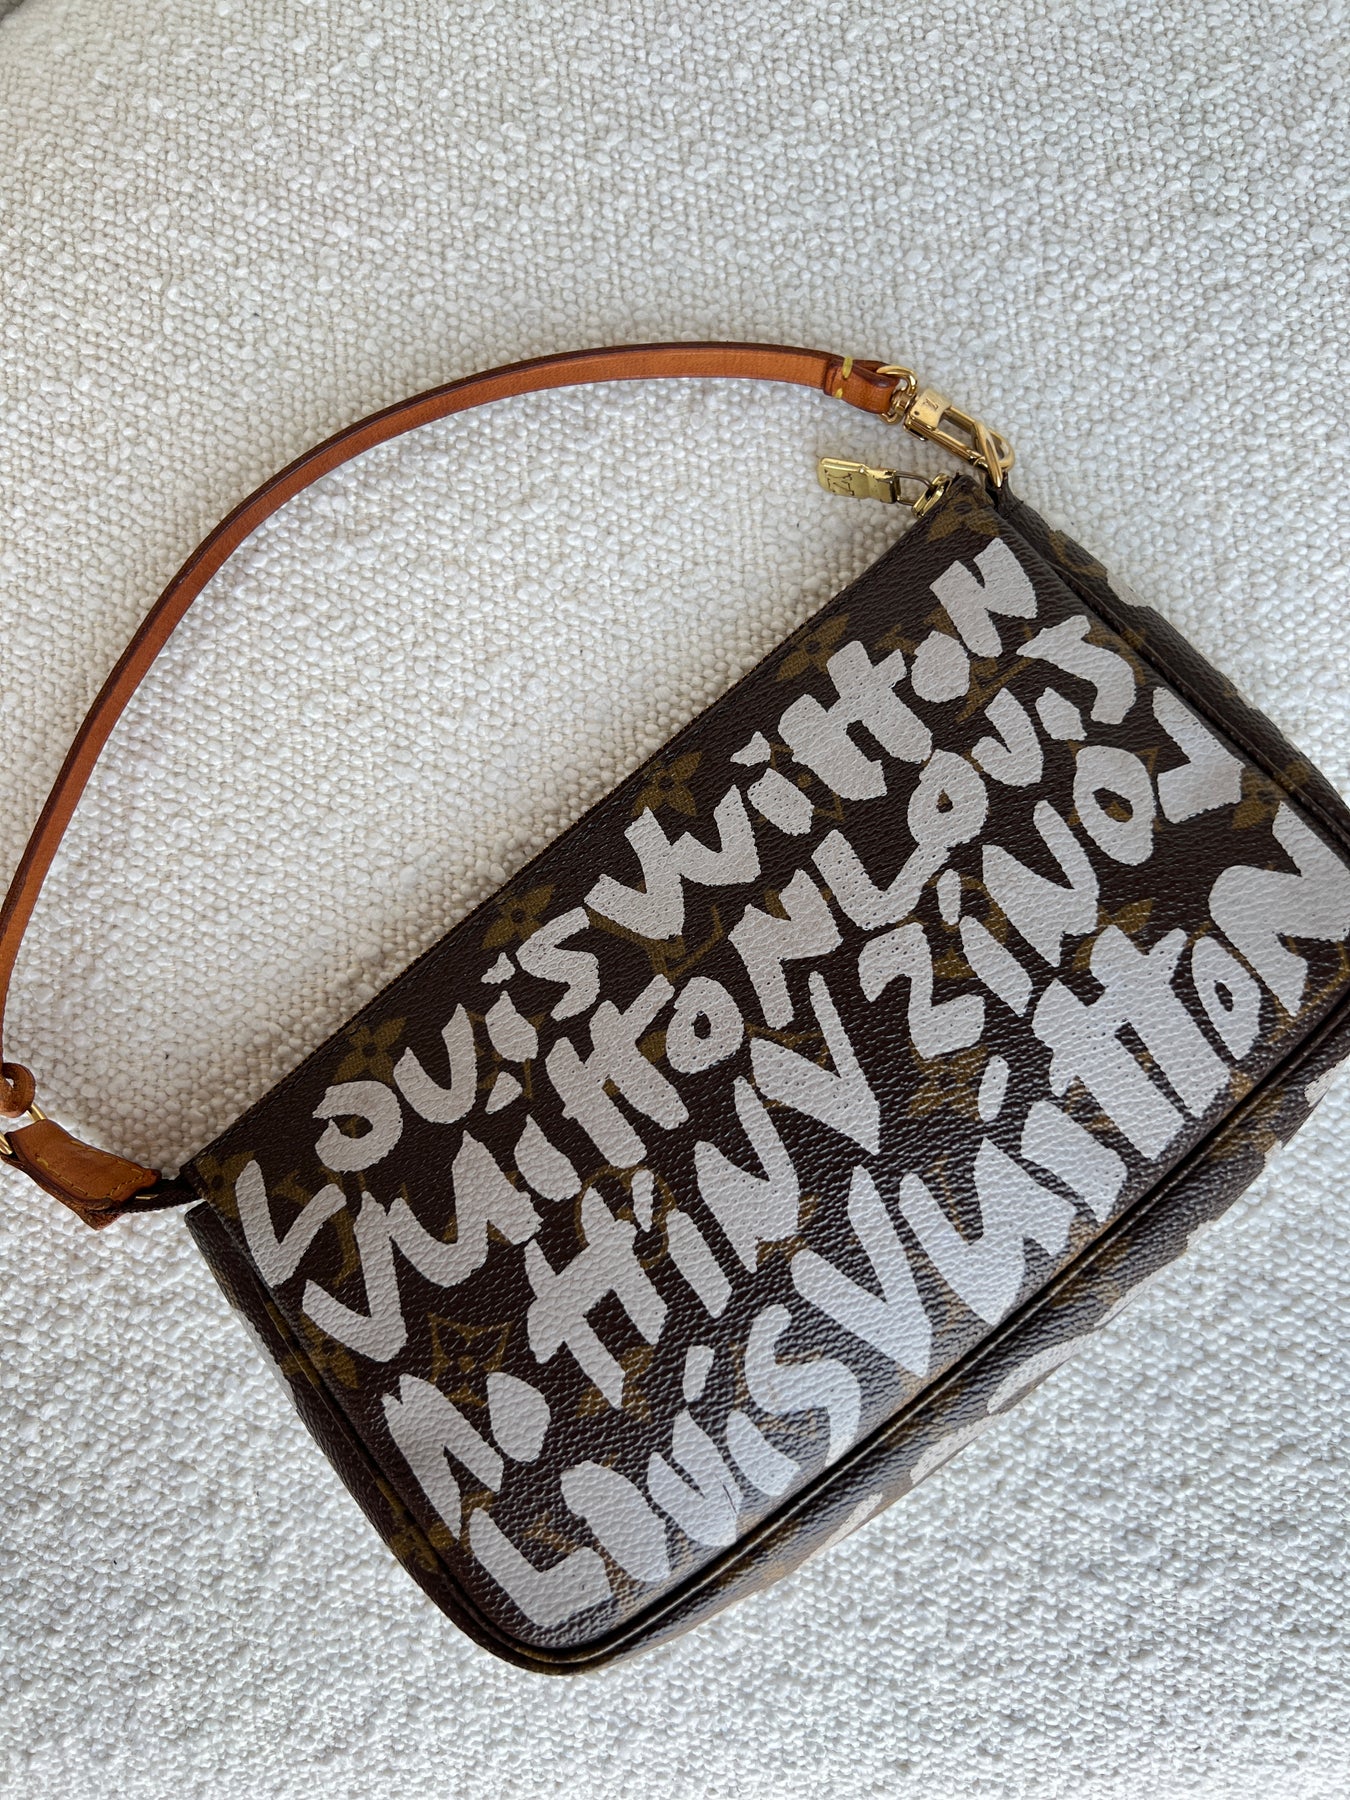 Louis Vuitton Stephen Sprouse Graffiti Pochette Accessoires Bag – I MISS  YOU VINTAGE